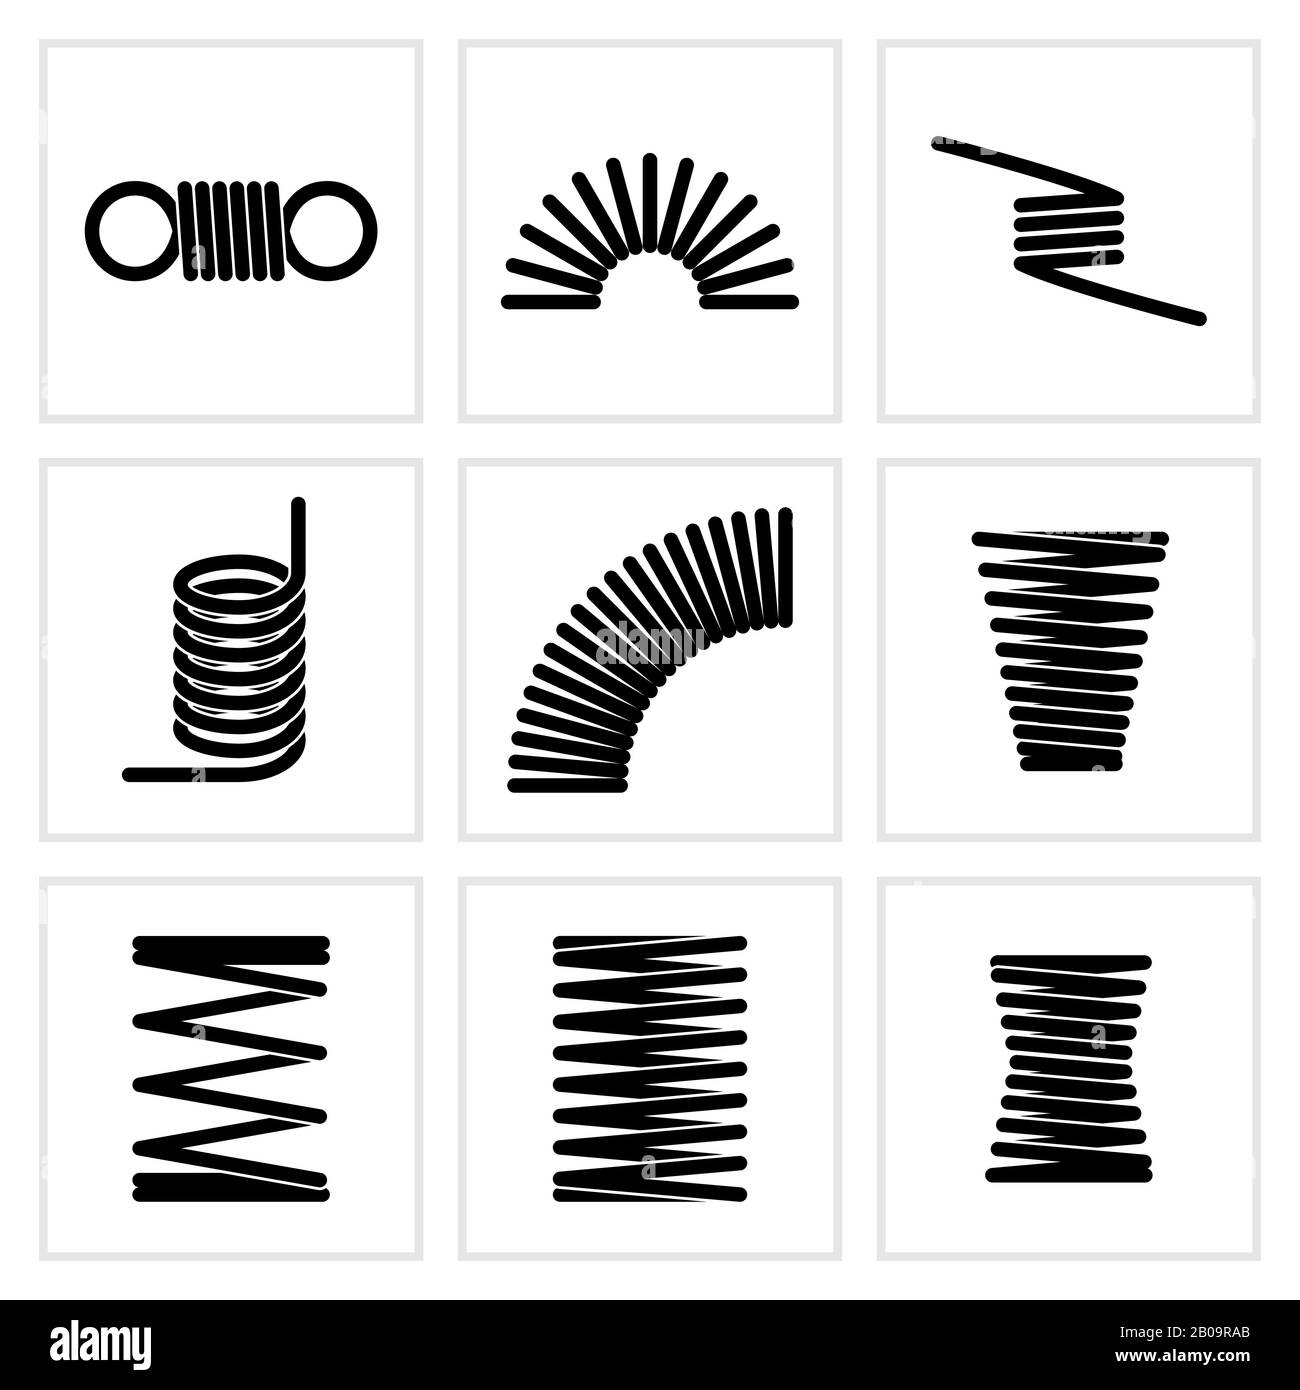 Icone vettoriali elastiche a spirale in metallo con filo flessibile. Spirale elastica flessibile, illustrazione della molla elicoidale Illustrazione Vettoriale